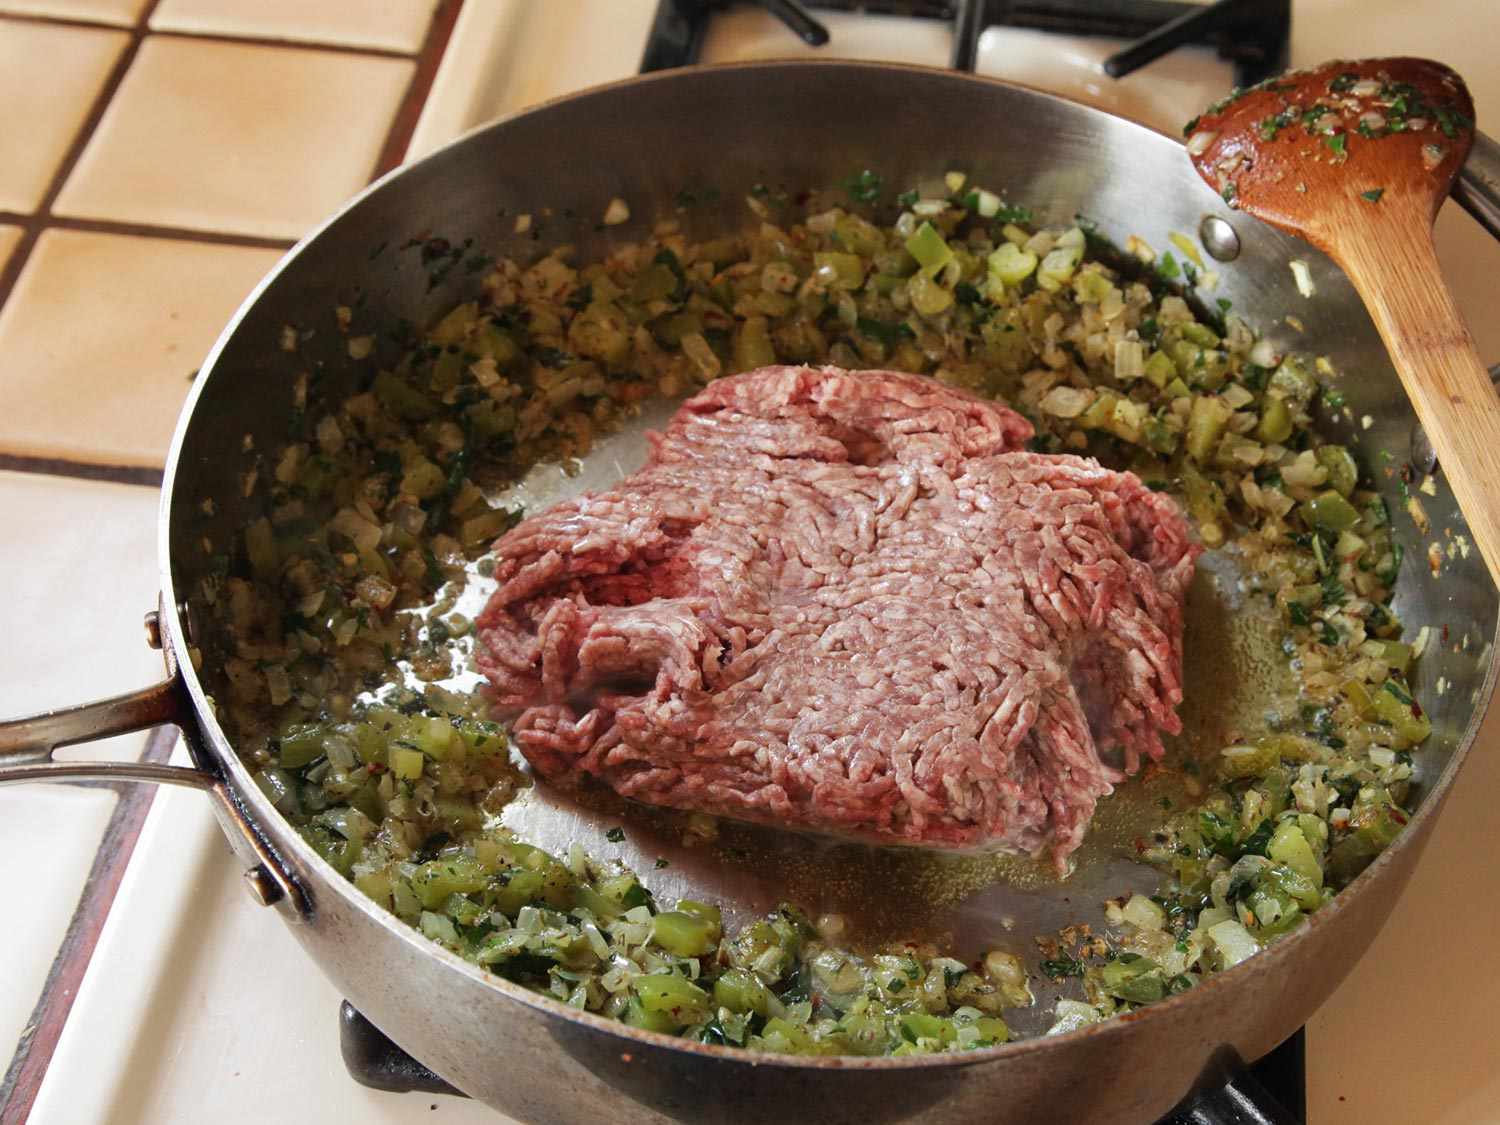 洋葱、青椒和香料被推到锅的边缘，为一大堆生碎牛肉腾出空间。